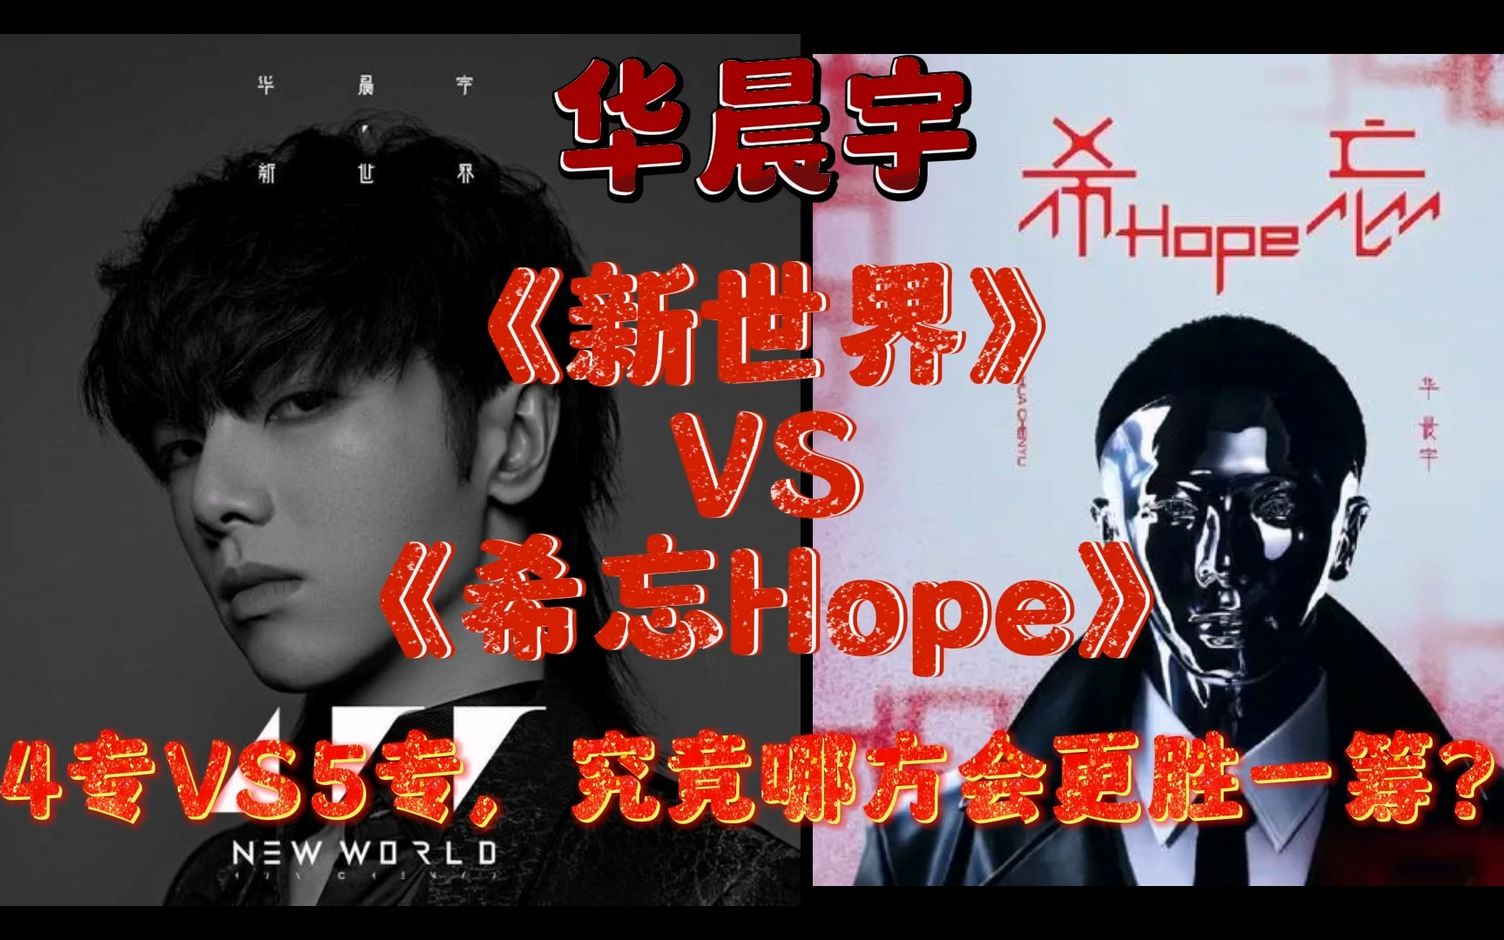 华晨宇《新世界》VS《希忘Hope》两张神专歌曲PK，究竟哪张专辑更“强”呢？